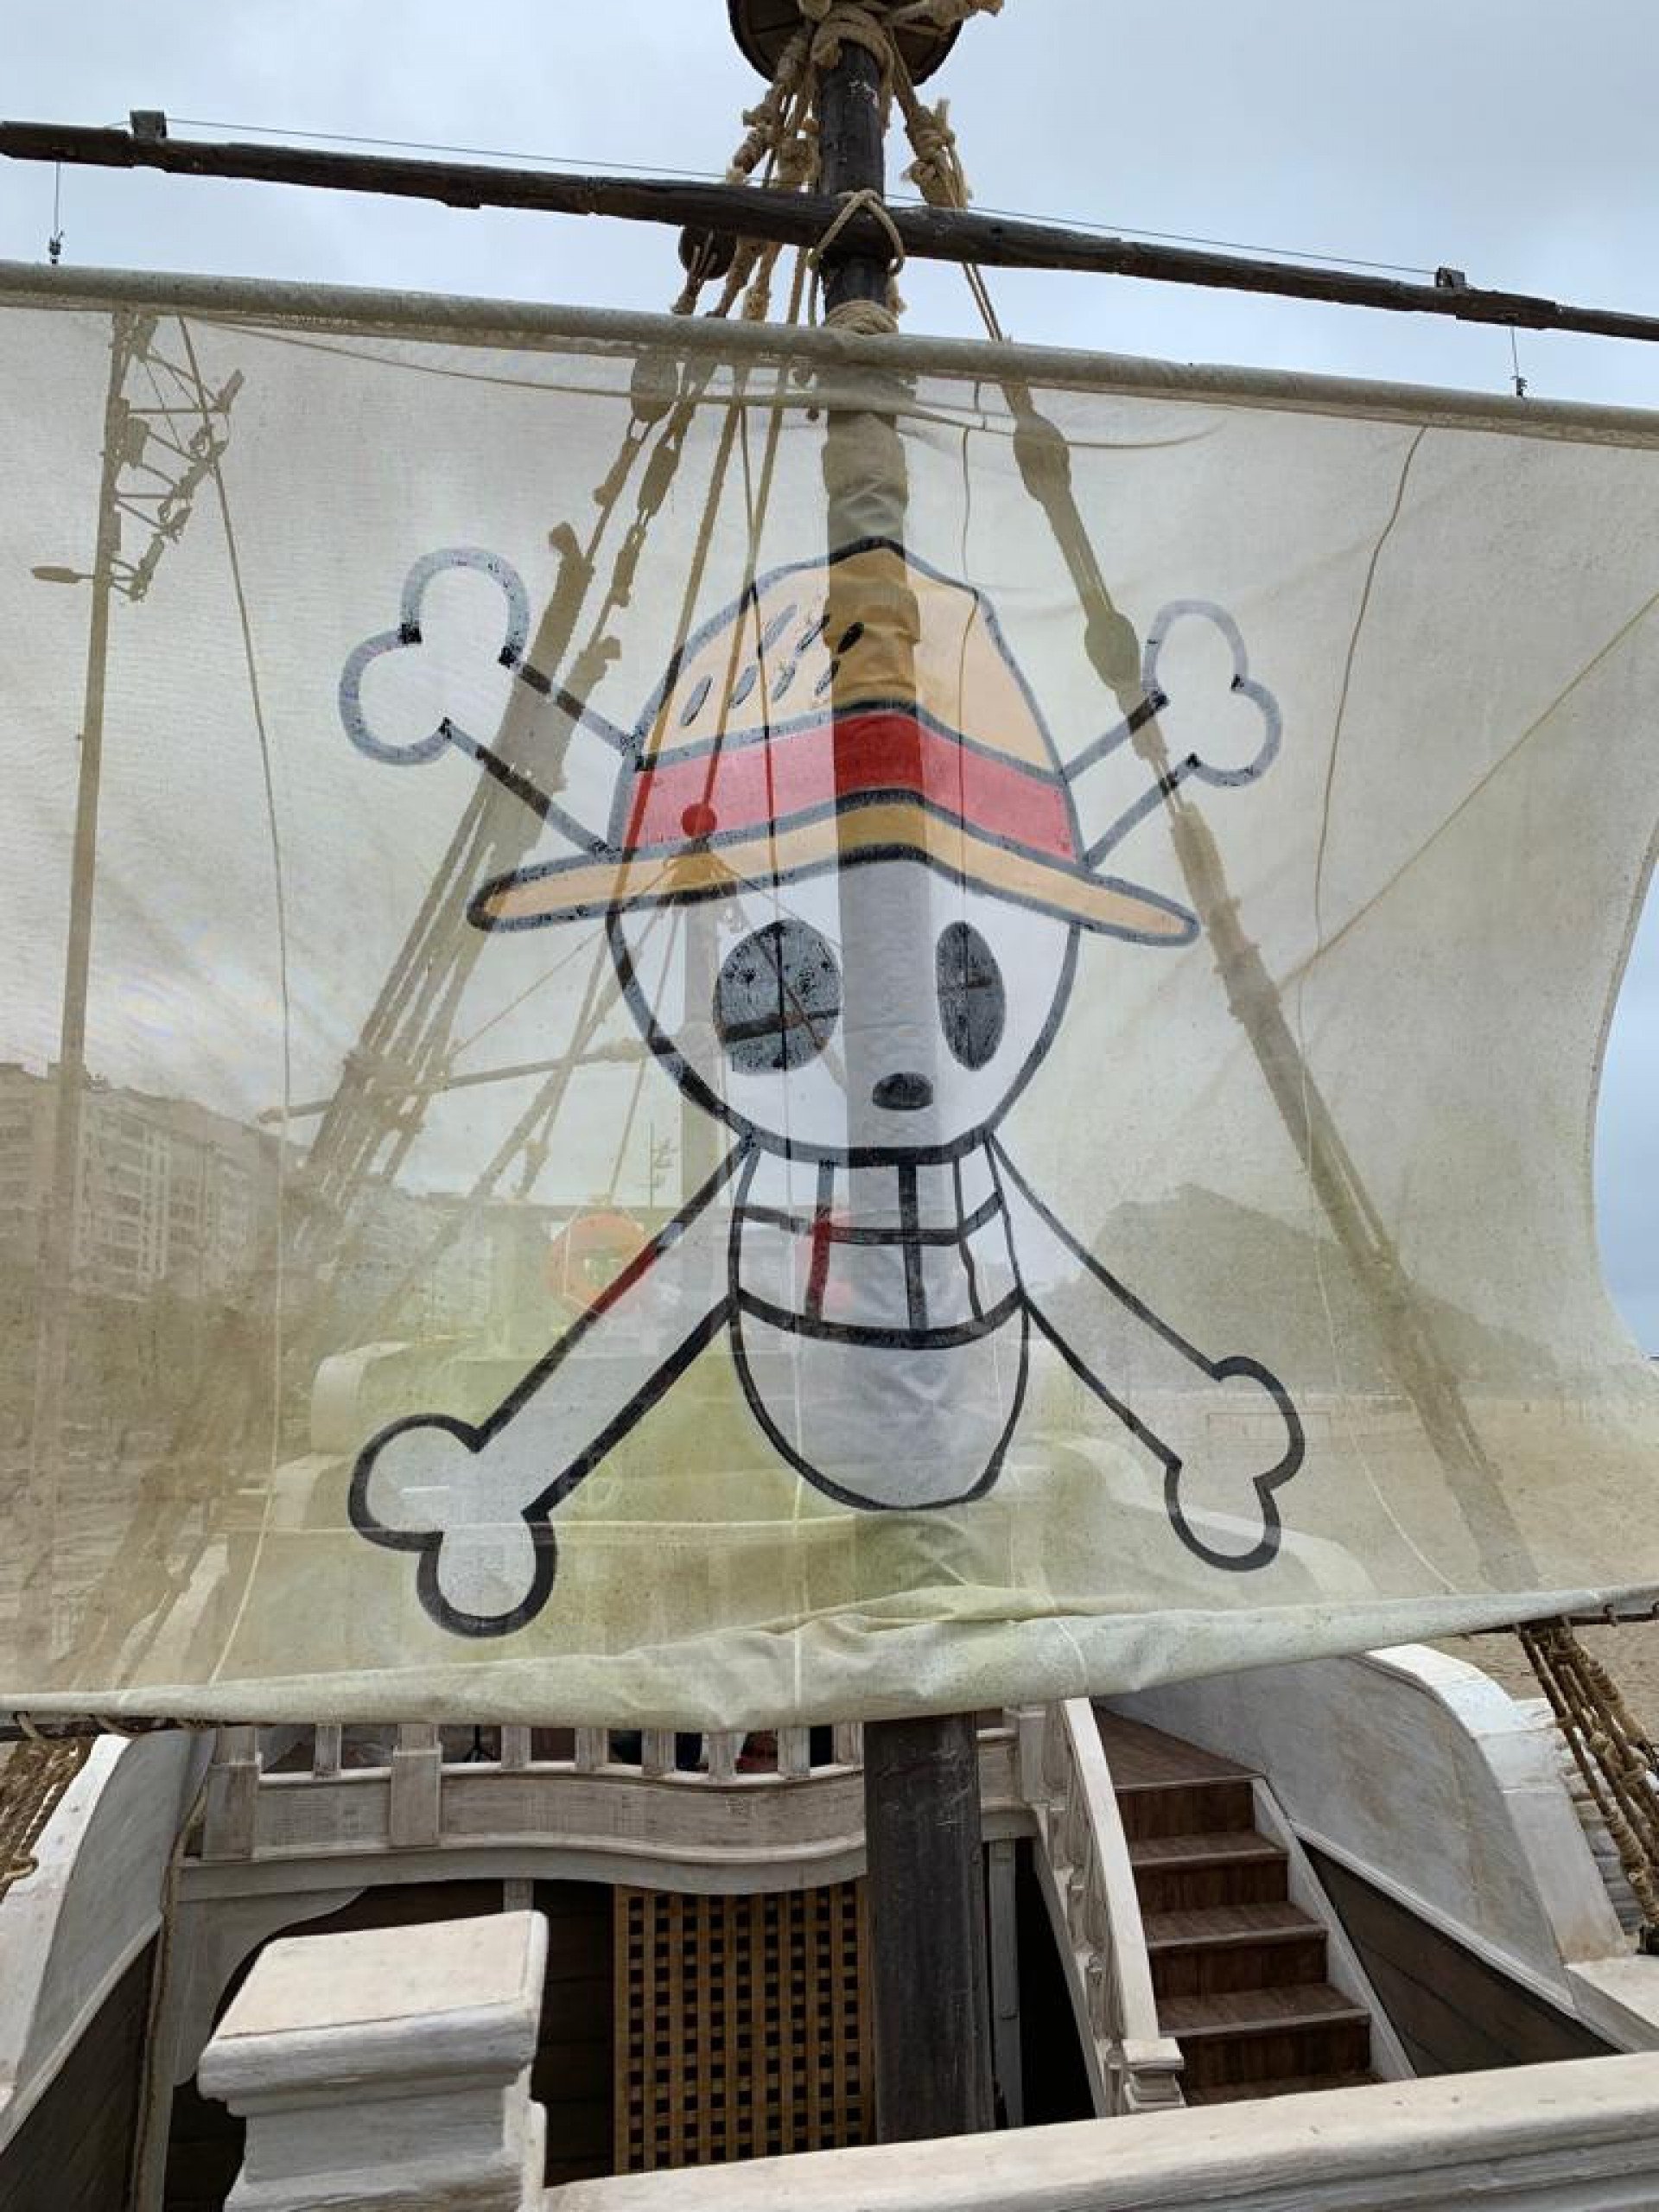 One Piece  Netflix revela detalhes da visitação ao Going Merry no Rio de  Janeiro